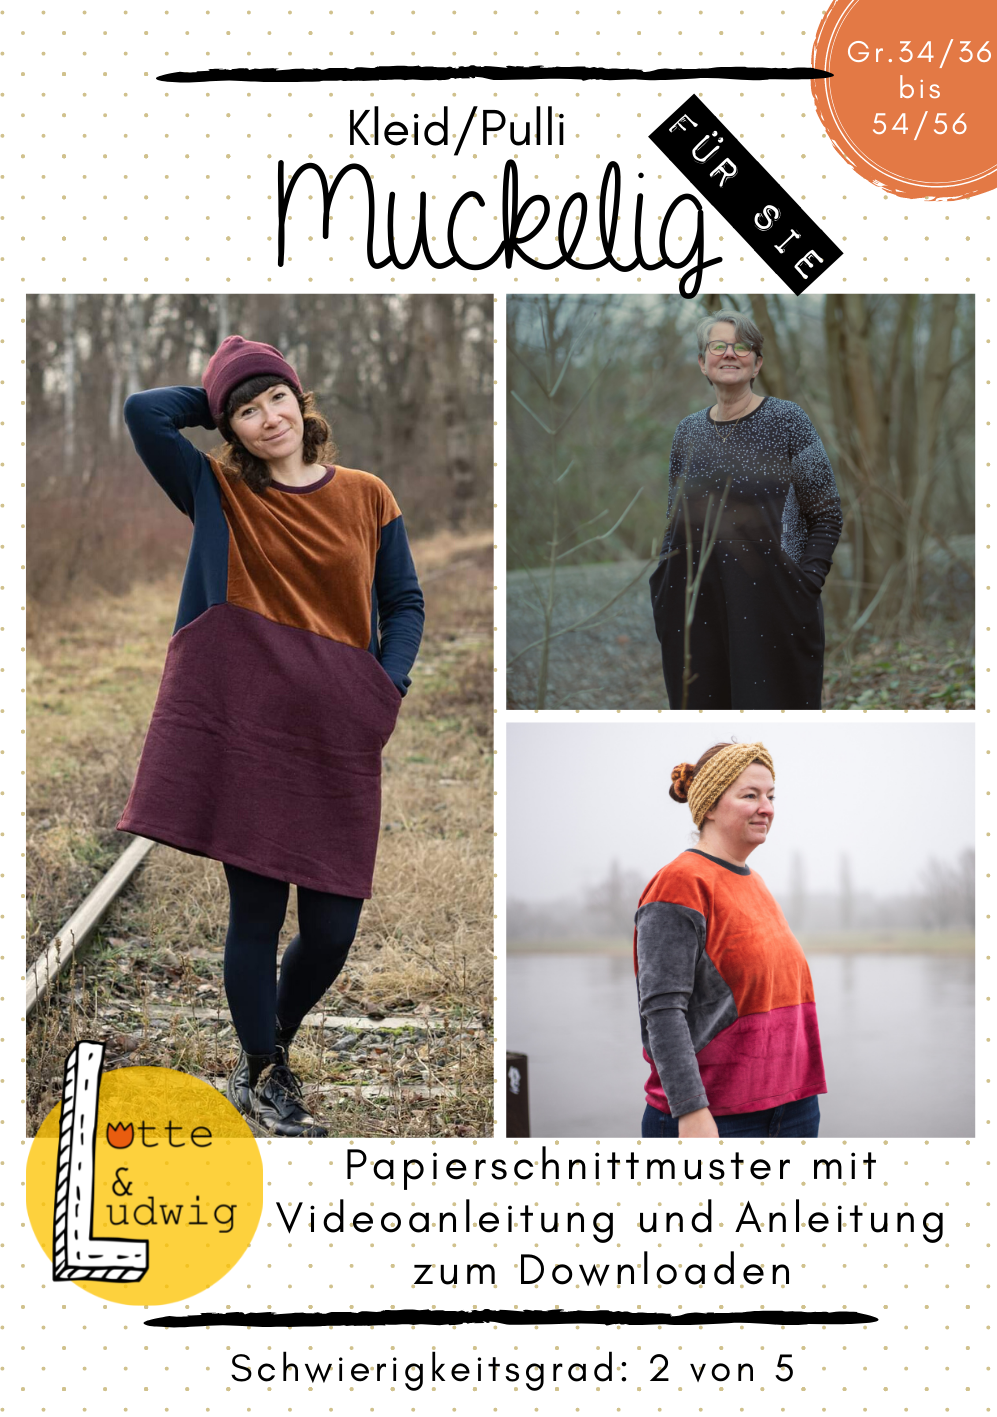 Papierschnittmuster Pulli/Kleid "Muckelig für Sie" von Lotte & Ludwig